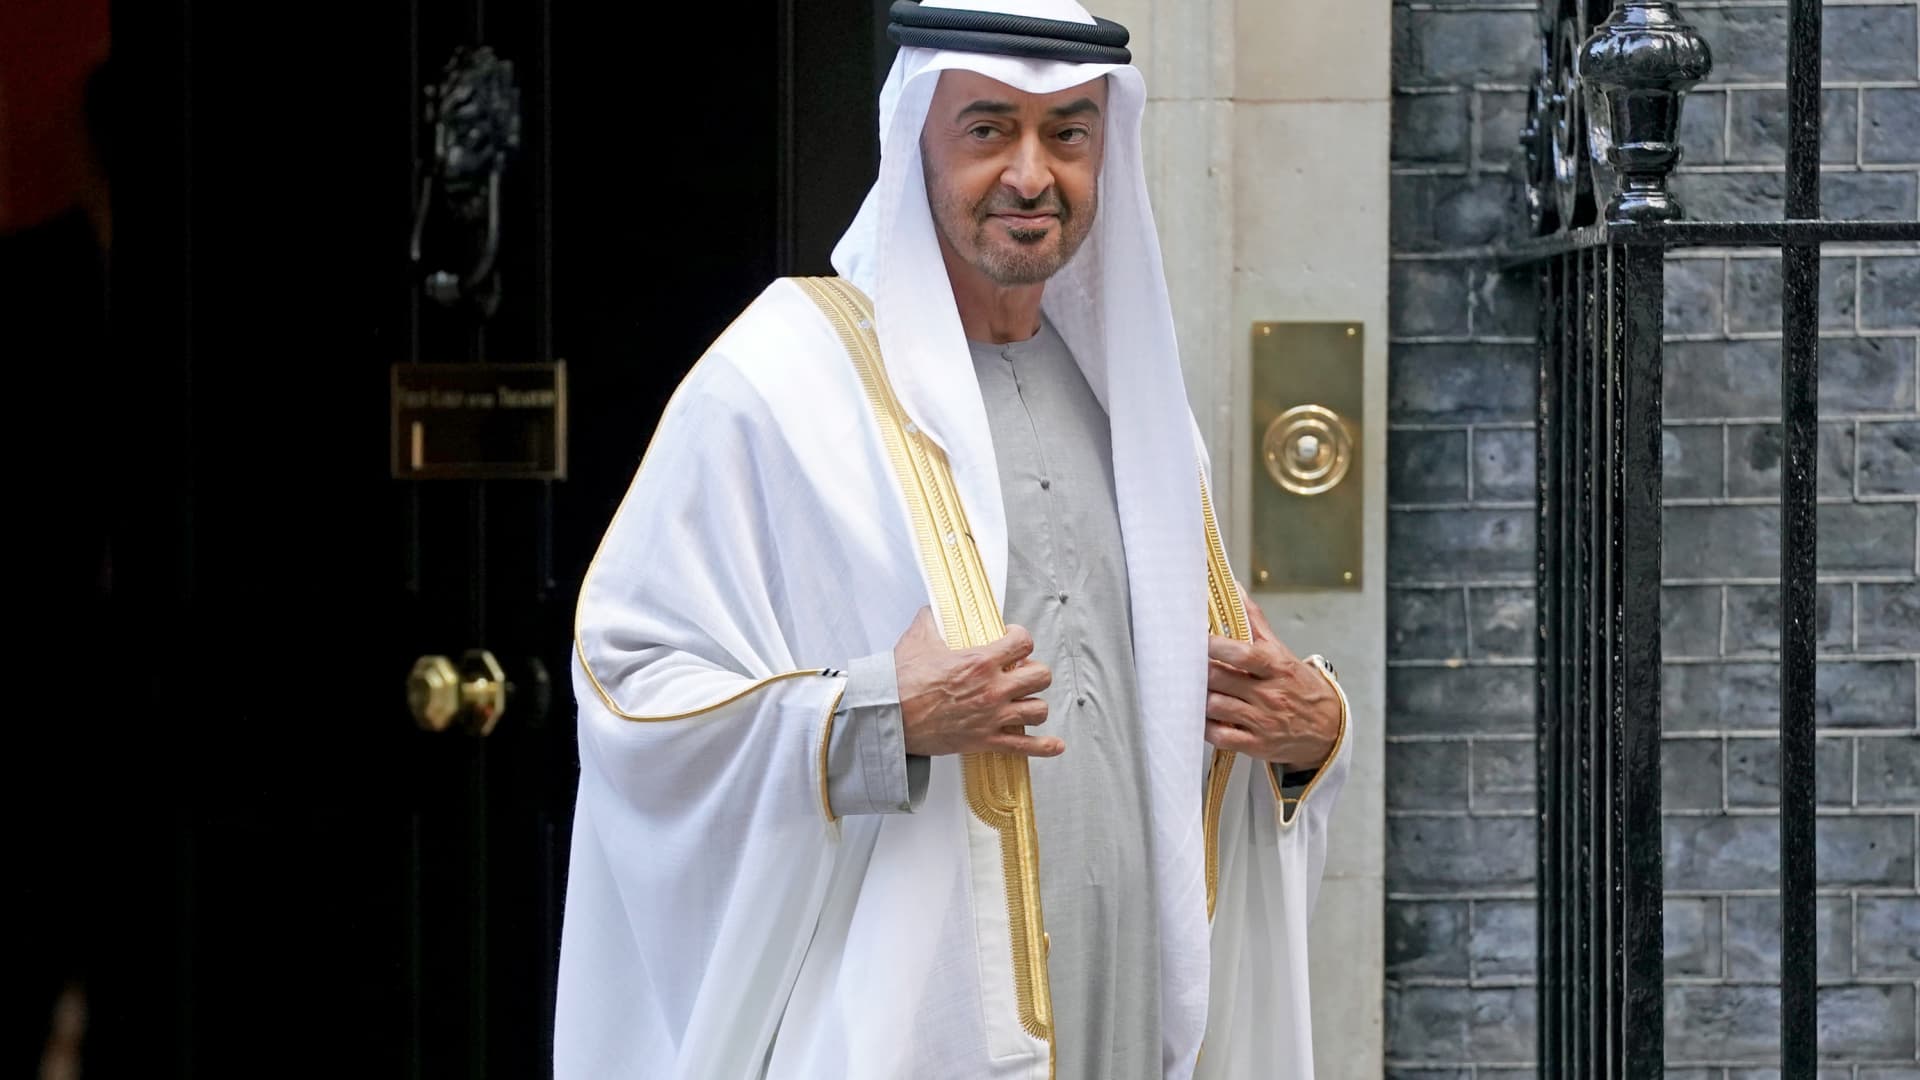 تم تعيين الشيخ محمد بن سعيد رئيسًا جديدًا لدولة الإمارات العربية المتحدة